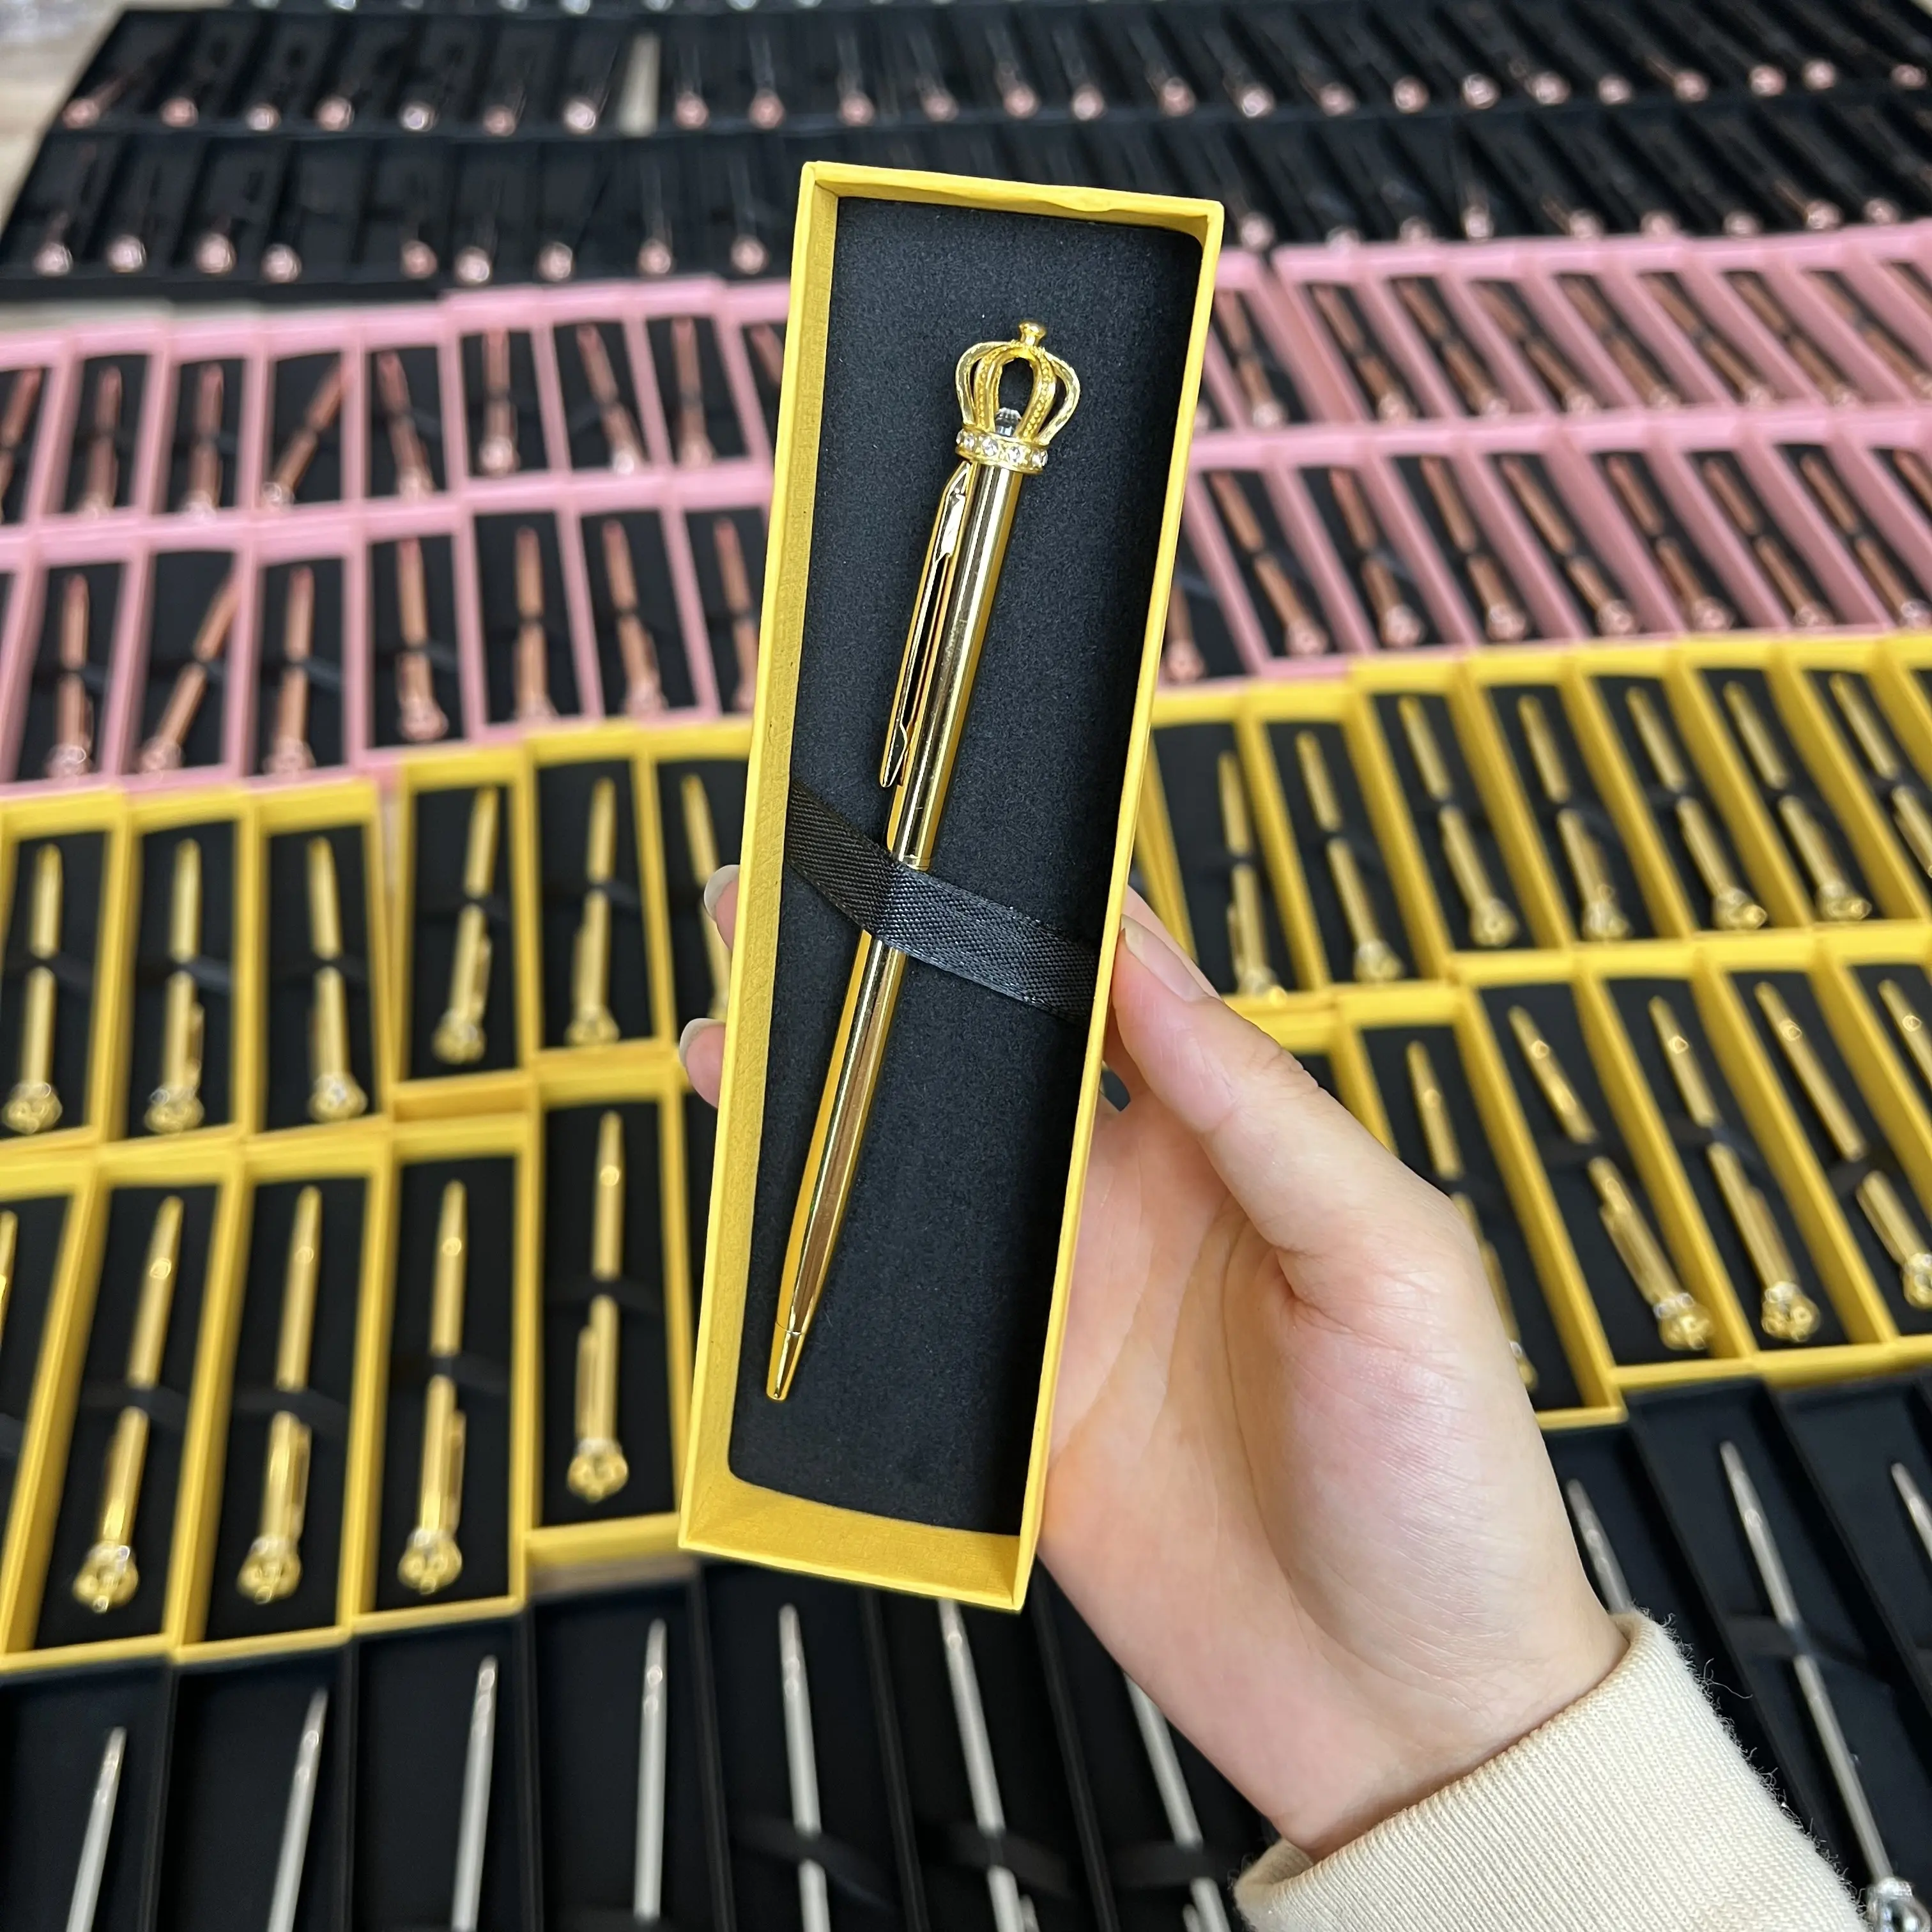 Premium lüks metalik büküm ince tükenmez kalemler elmas taç kalem hediye kutu seti ile özel reklam kalem